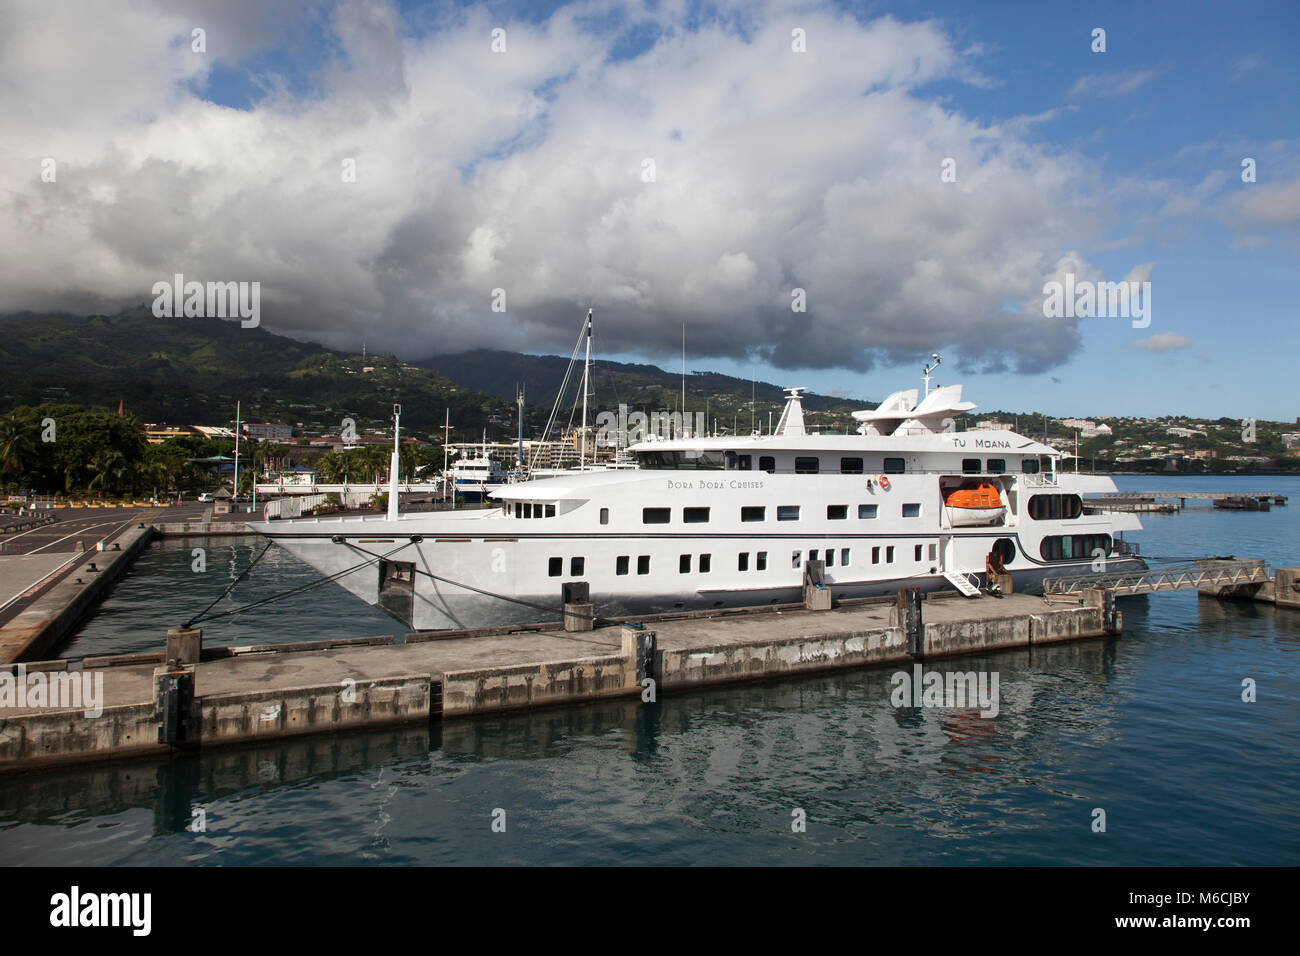 Bora Bora Cruises, traghetto per Bora Bora, ancorato nel porto di Papeete, Tahiti, Polinesia Francese Foto Stock